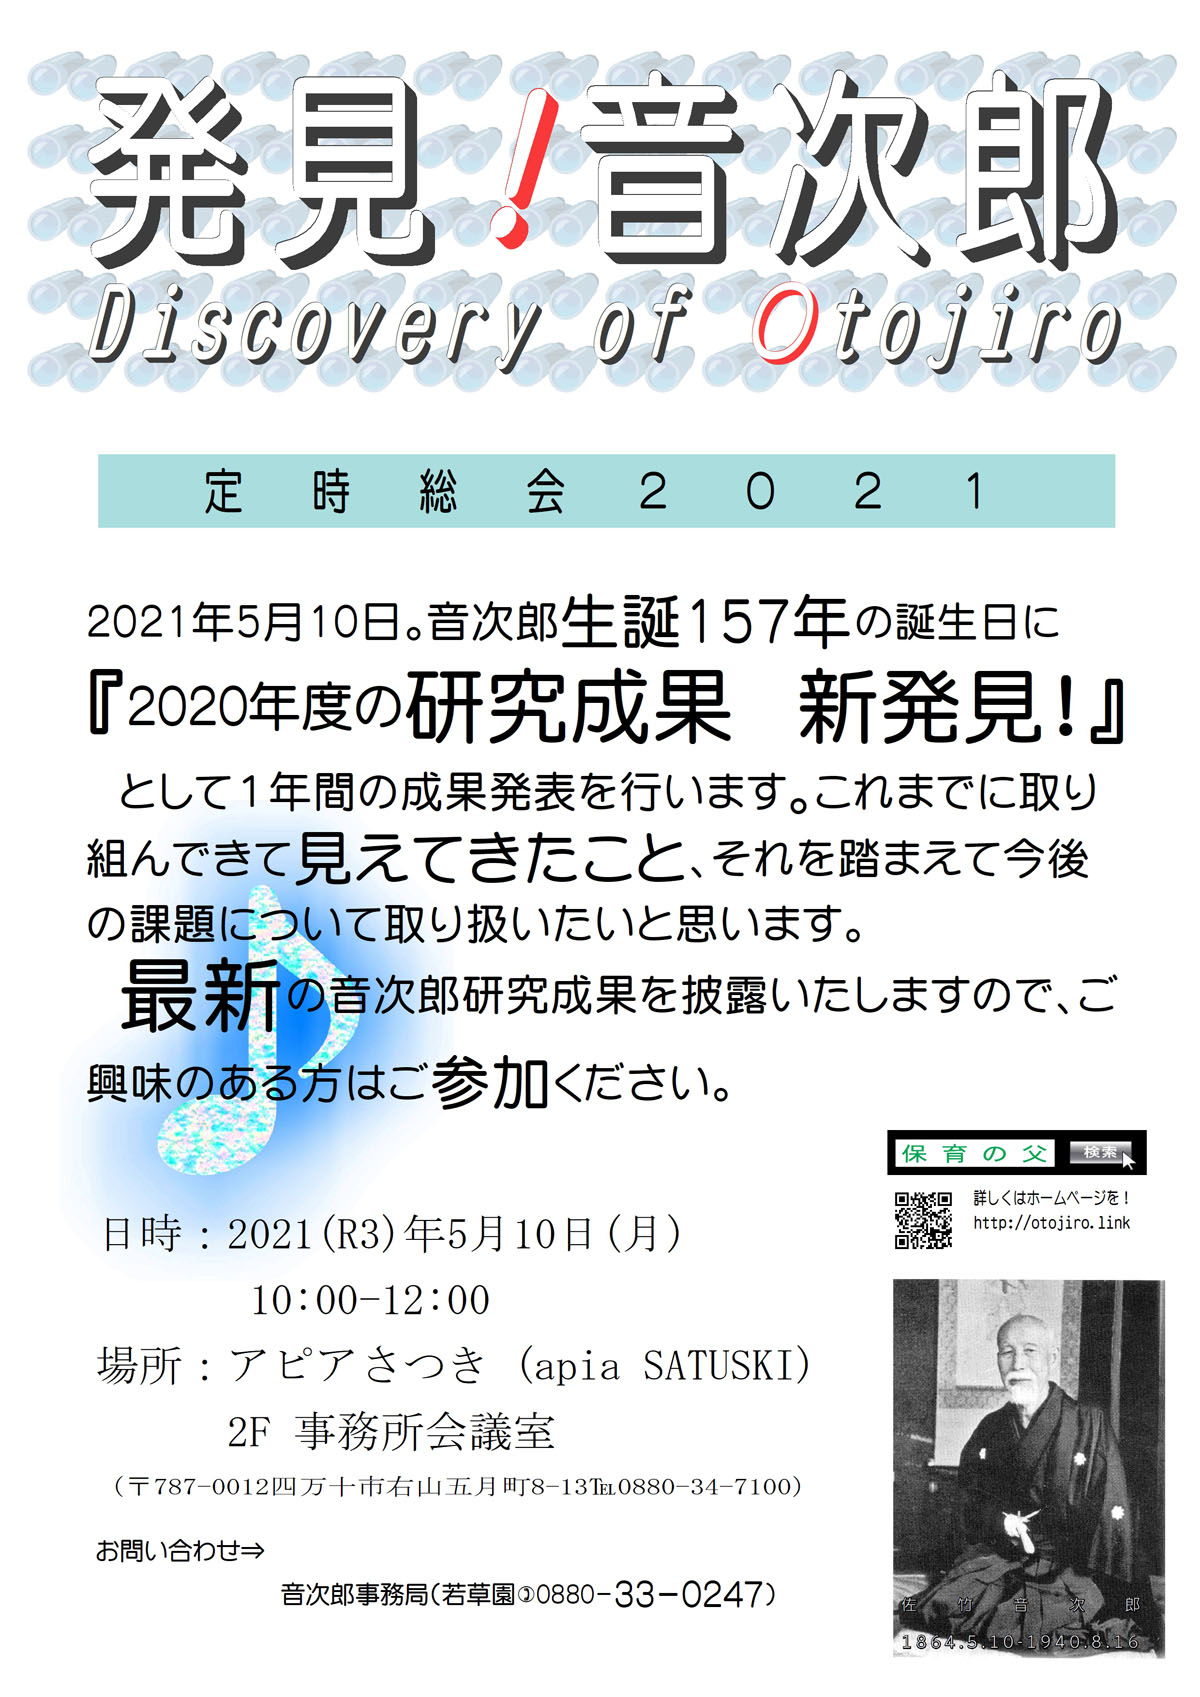 発見!音次郎 Discovery of Otojiro　定時総会２０２１　2021年5月10日。音次郎生誕157年の誕生日に『2020年度の研究成果　新発見！』　として１年間の成果発表を行います。これまでに取り組んできて見えてきたこと、それを踏まえて今後の課題について取り扱いたいと思います。最新の音次郎研究成果を披露いたしますので、ご興味のある方はご参加ください。日時：2021(R3)年5月10日(月)10:00-12:00　場所：アピアさつき　2F事務所会議室（〒787-0012四万十市右山五月町8-13℡0880-34-7100）お問い合わせ　音次郎事務局（若草園)0880-33-0247